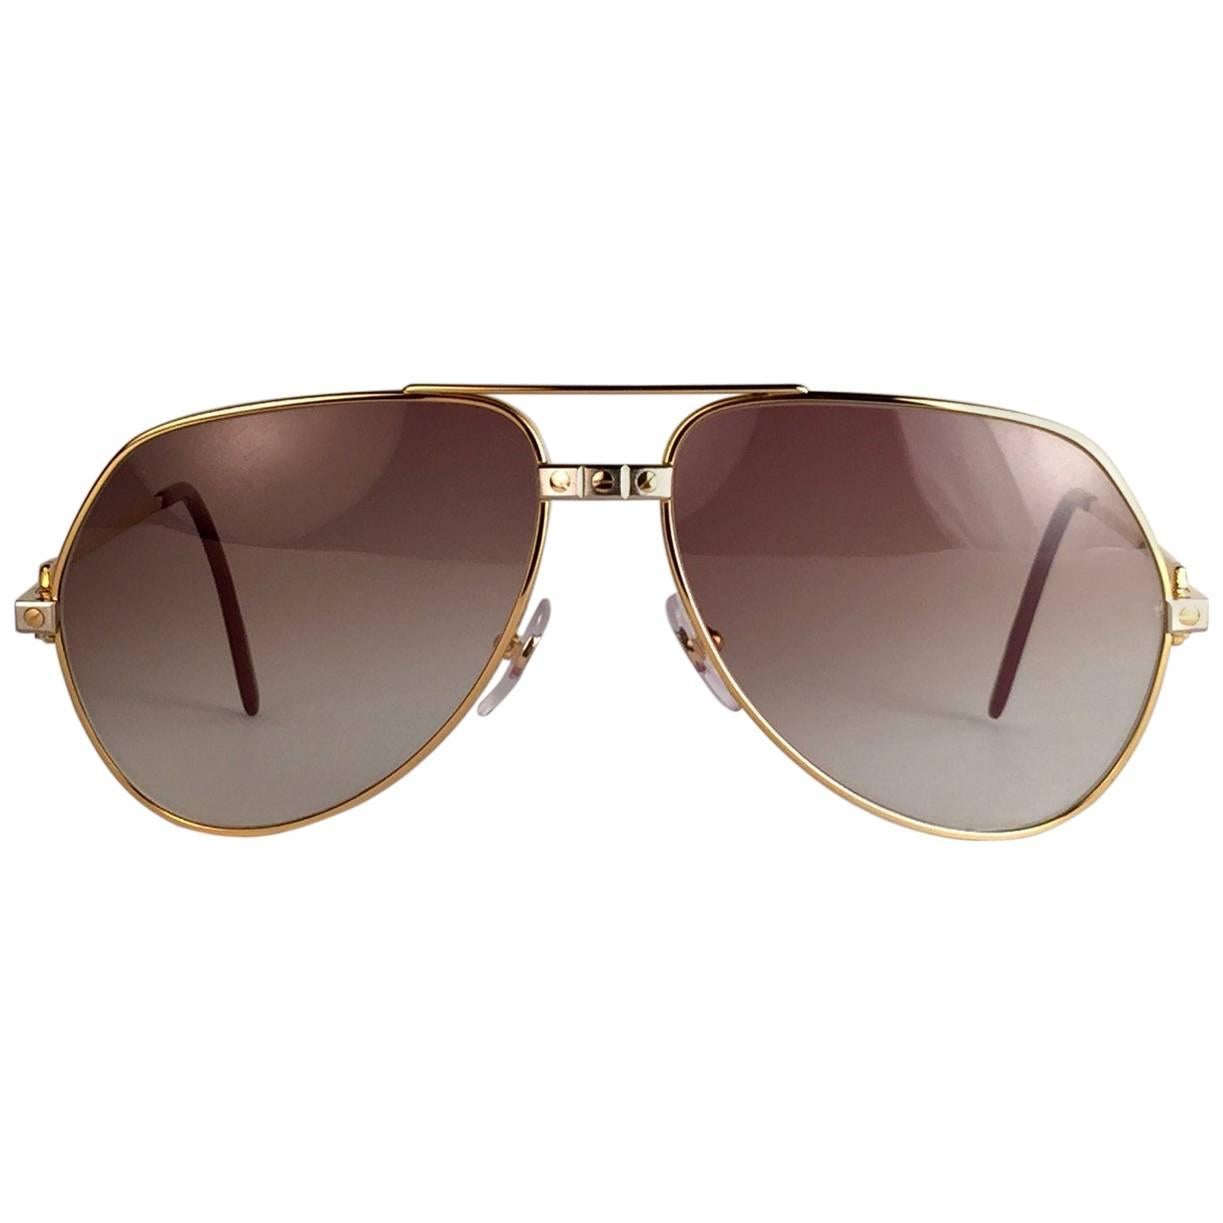 Neu ab 1983!!! Cartier Aviator Santos Sonnenbrille mit braunen Verlaufsgläsern (UV-Schutz). 
Der Rahmen ist mit den berühmten Schrauben auf der Vorderseite und an den Seiten in Gelb- und Weißgold. Alle Markenzeichen. Rote Emaille mit goldenen